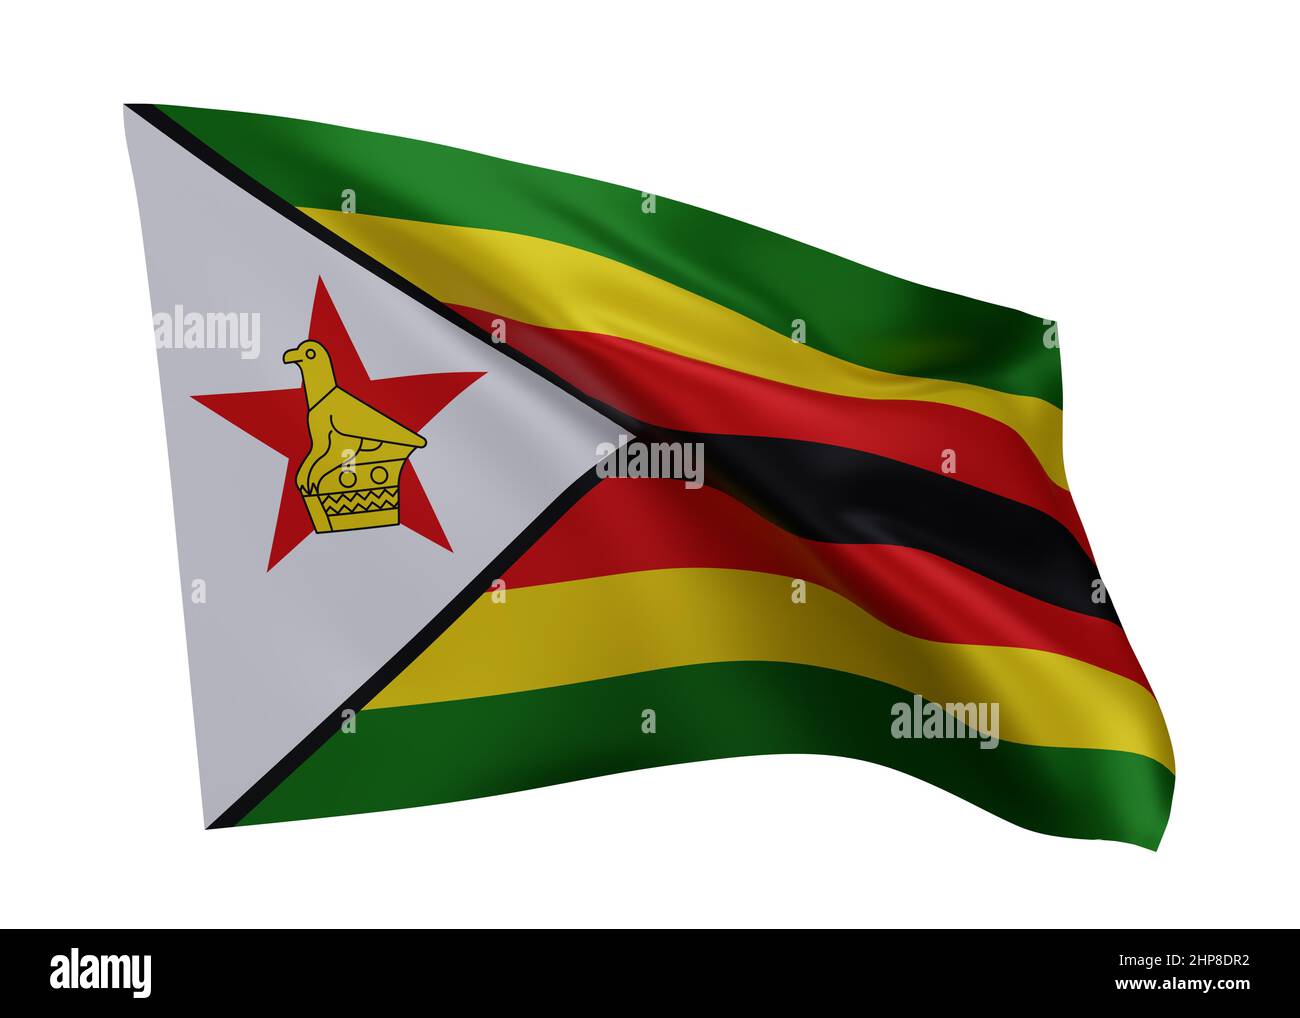 3d illustration flag of Zimbabwe. Zimbabwe high resolution flag isolated against white background. 3d rendering Stock Photo